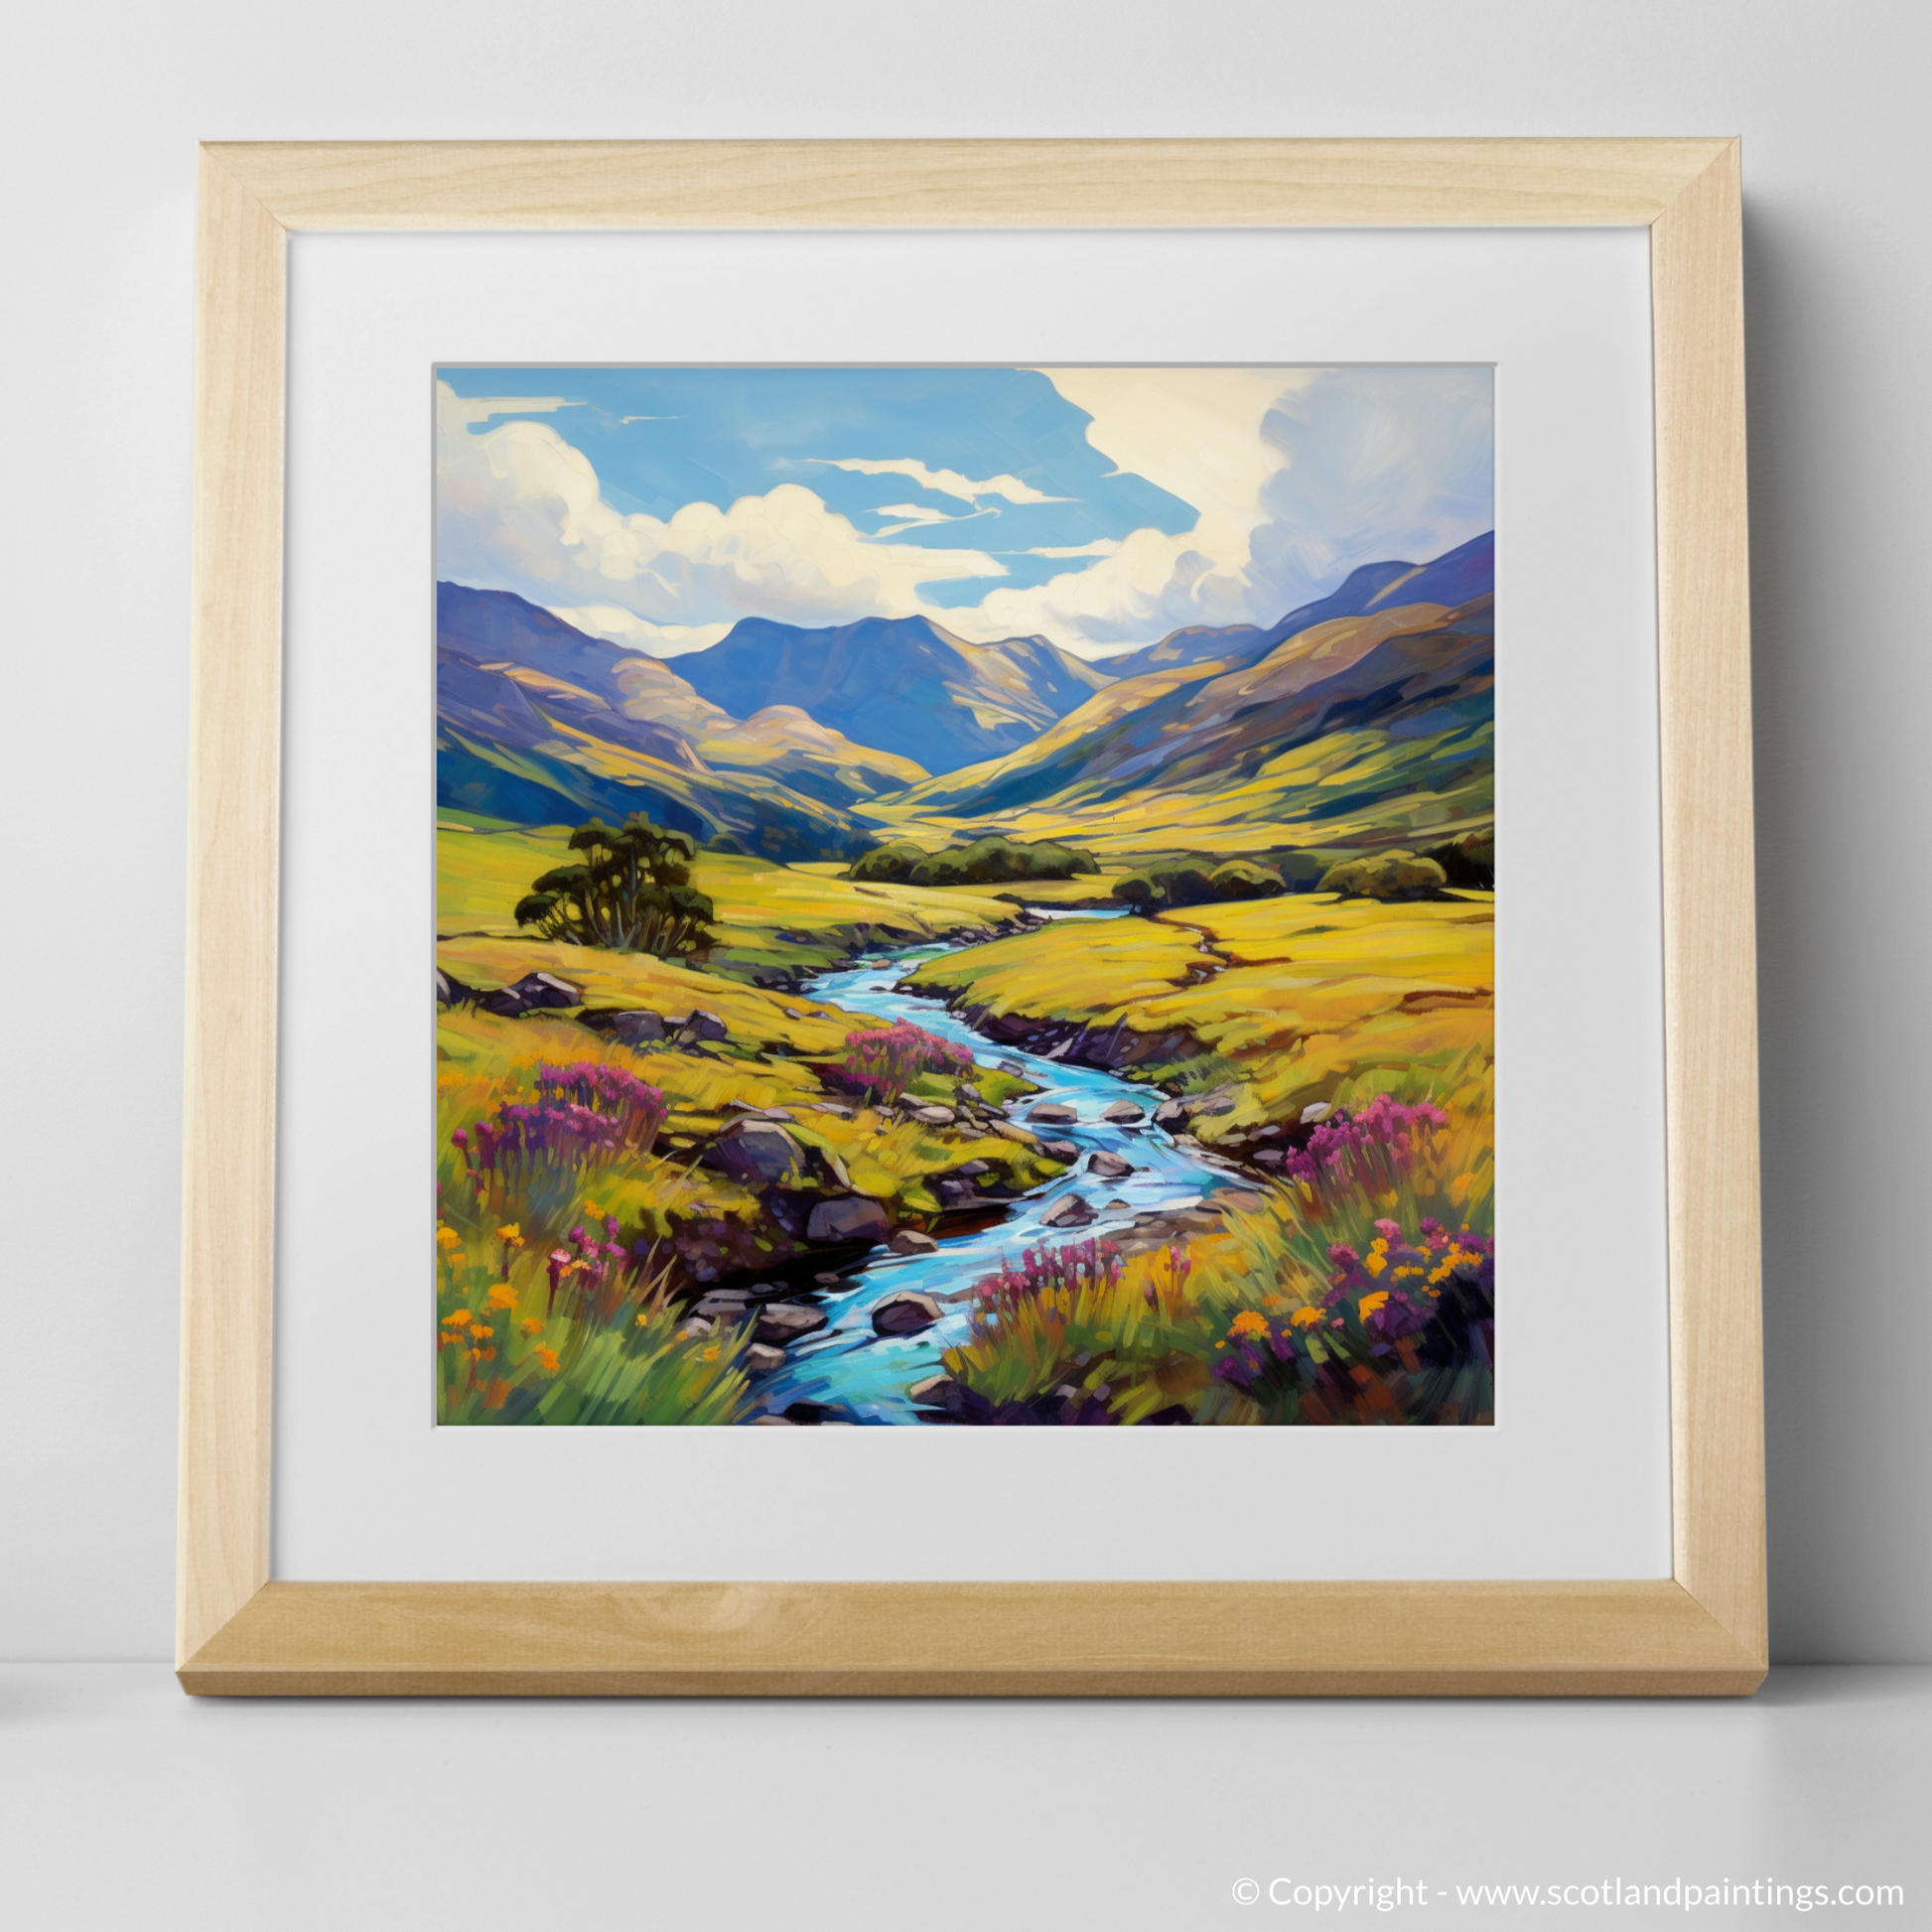 Art Print of Glen Shiel, Highlands in summer with a natural frame